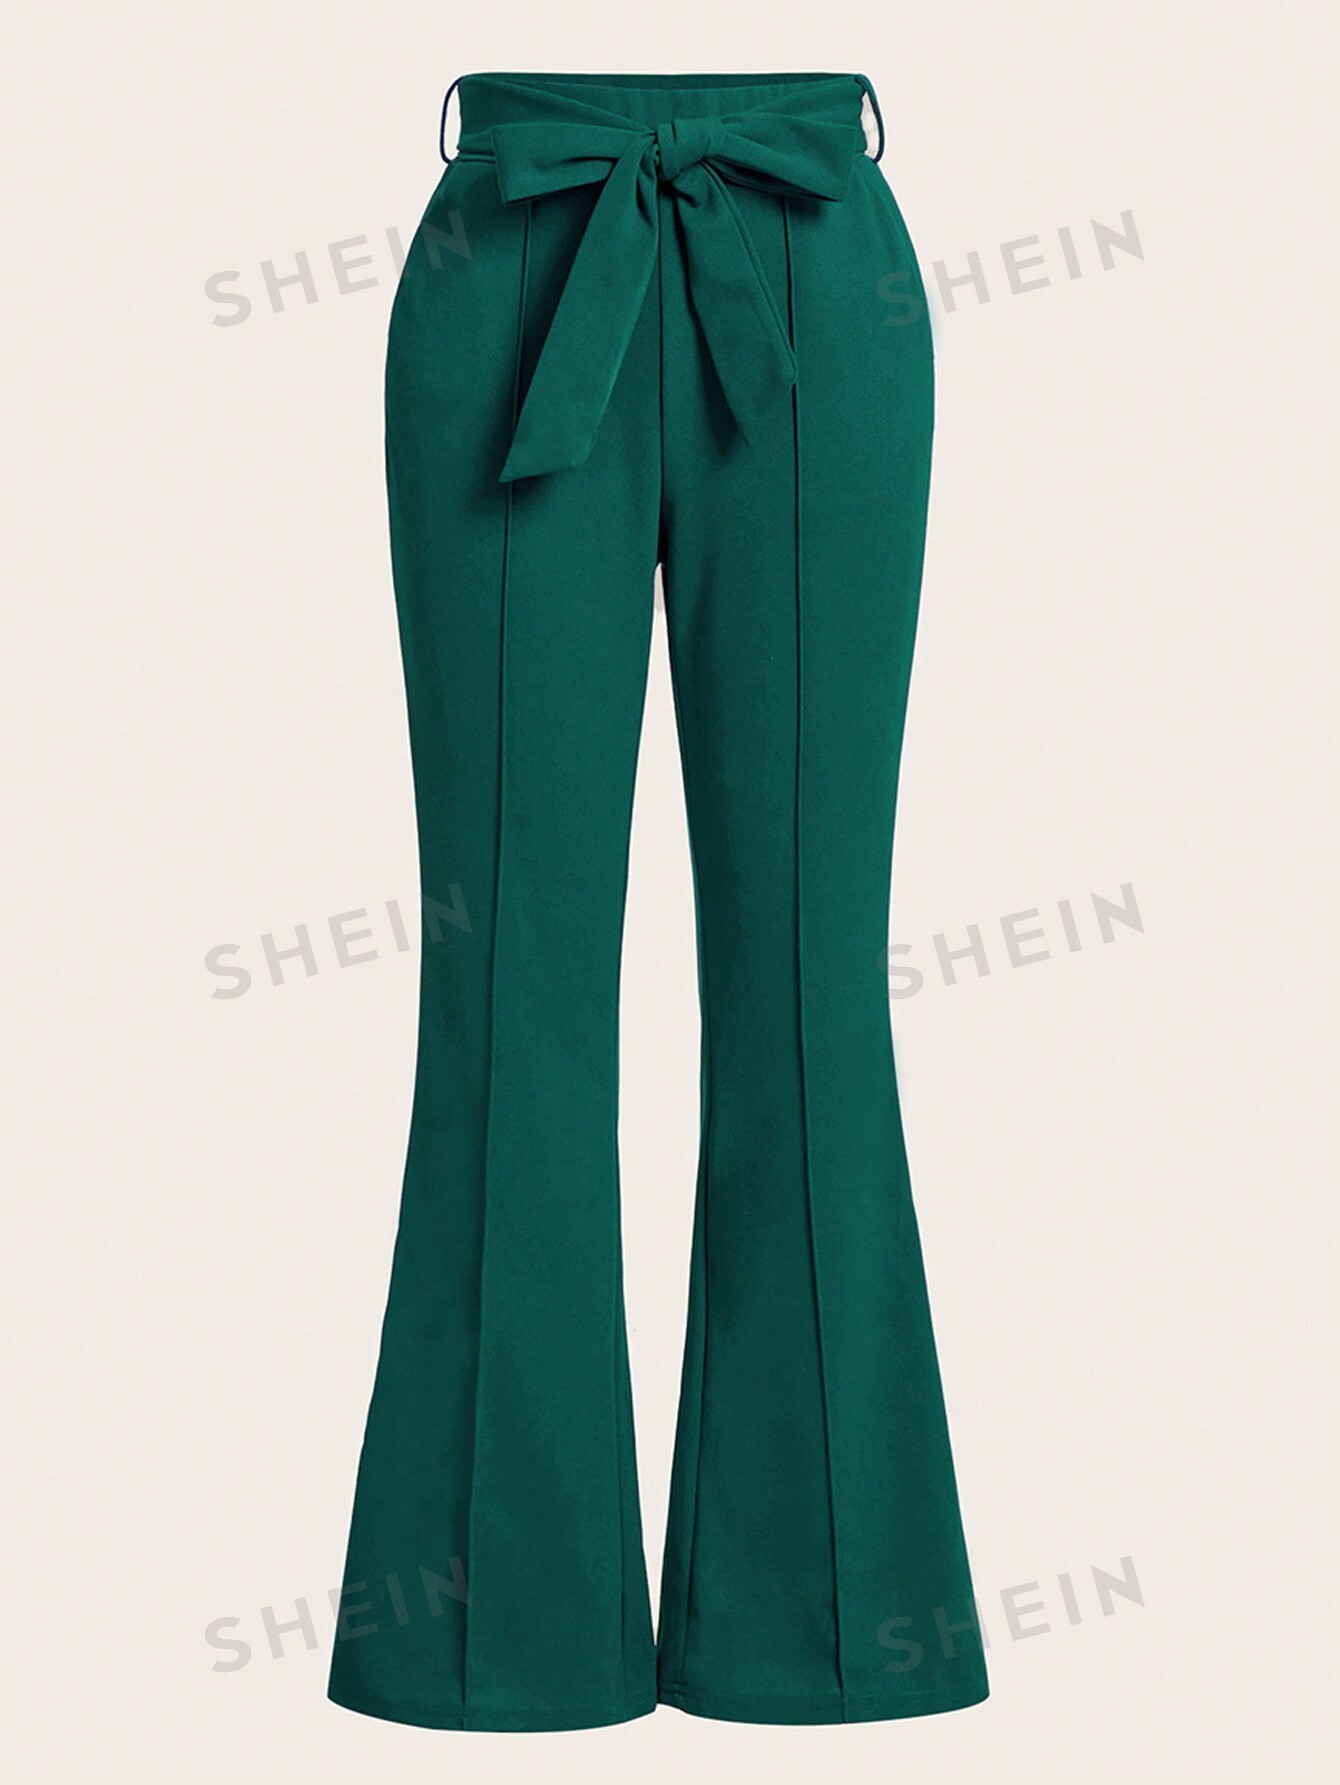 SHEIN Clasi Женские брюки однотонного цвета с расклешенным низом, зеленый